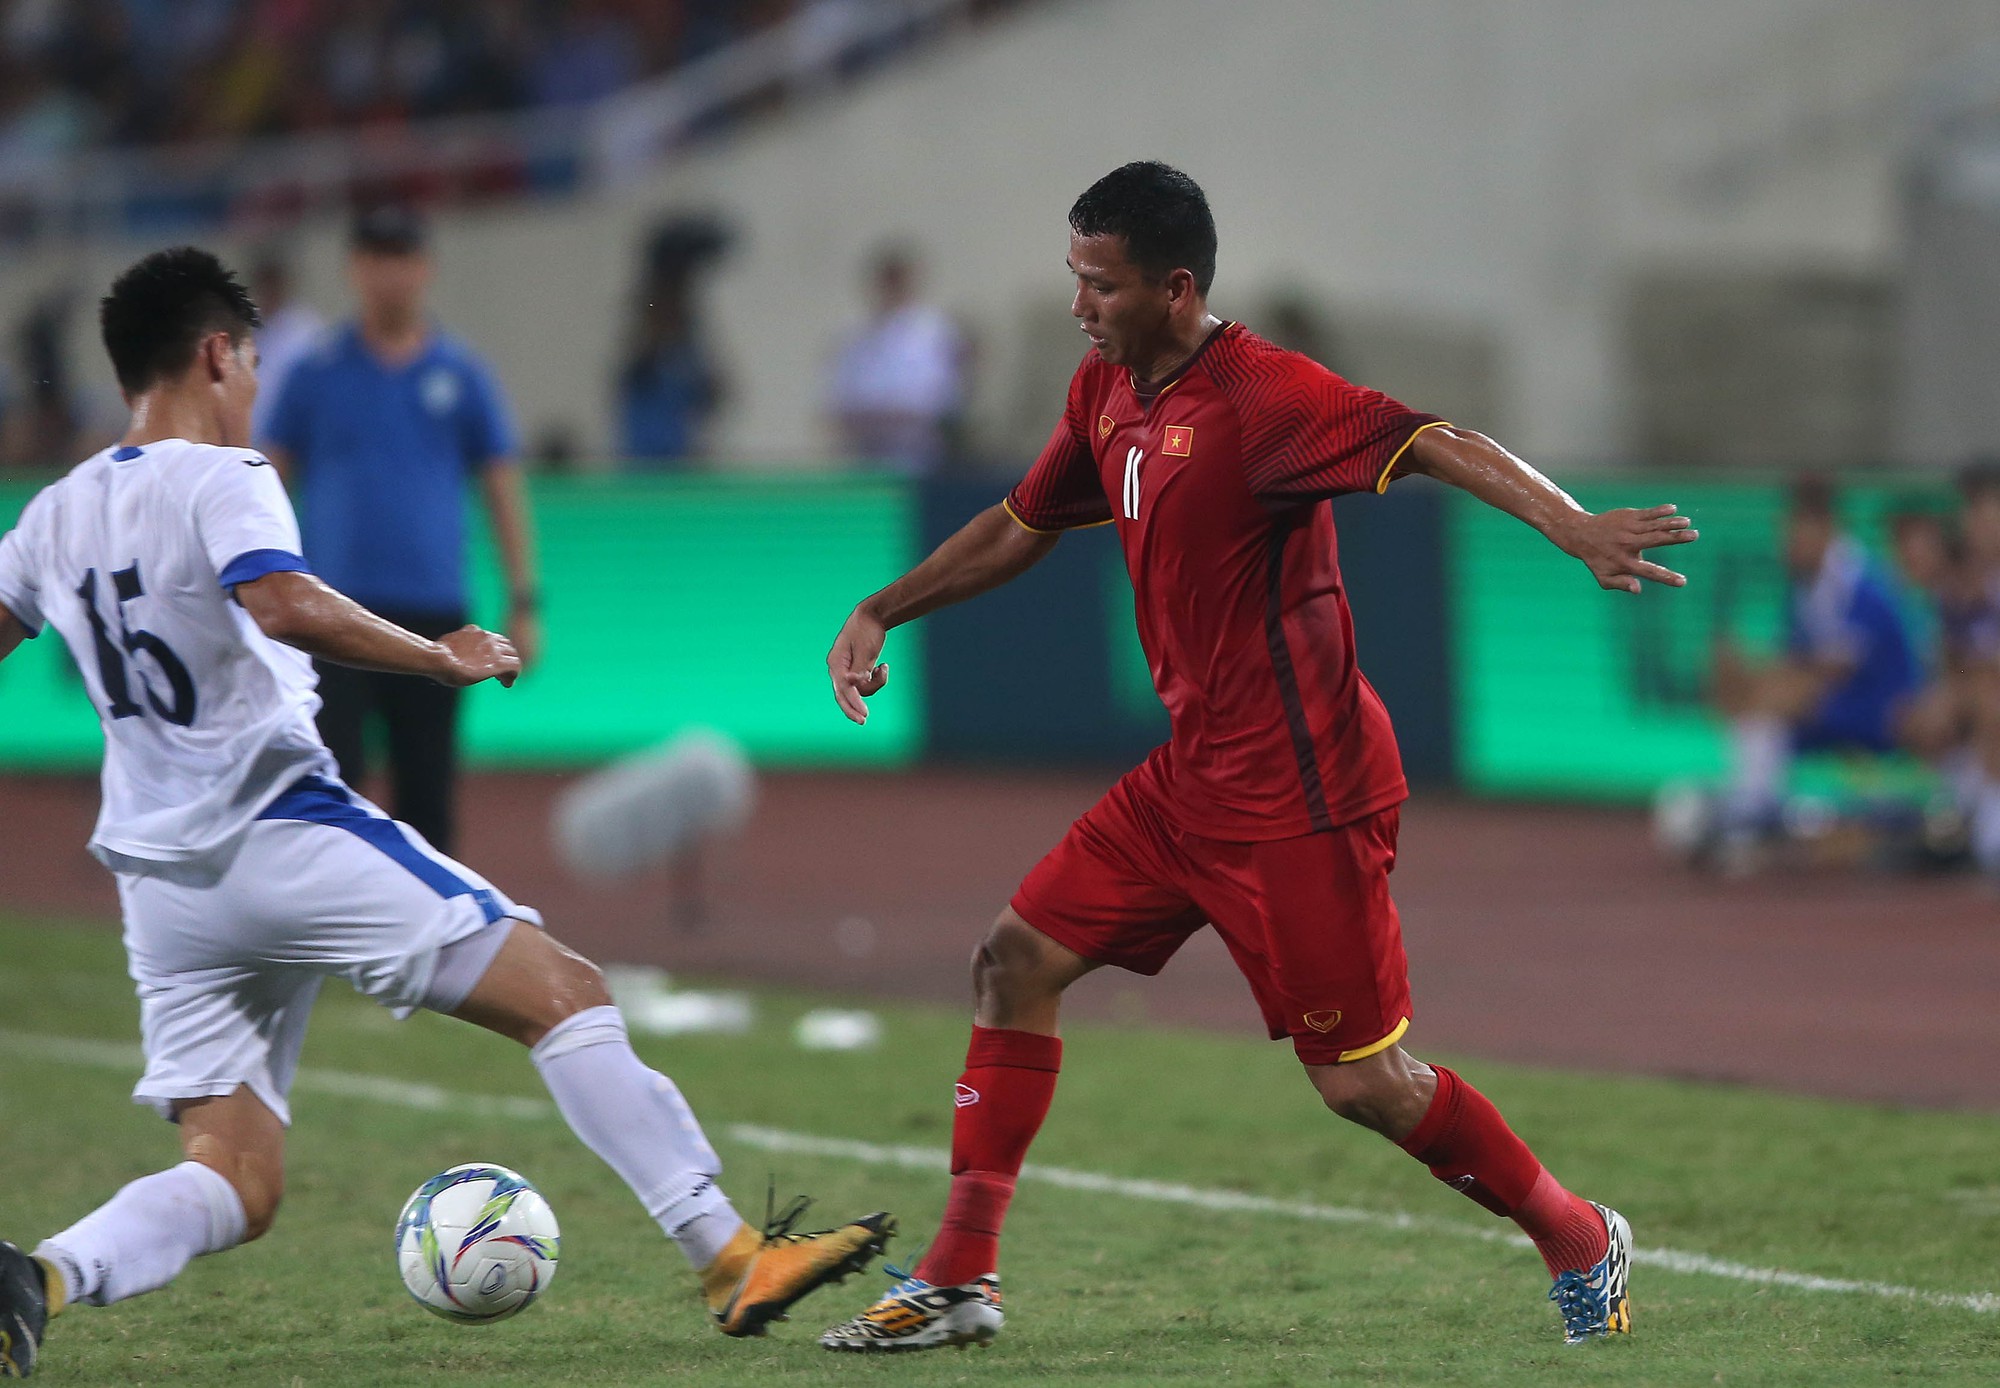 HLV Lê Thụy Hải nói điều bất ngờ về Công Phượng sau giải U23 Quốc tế - Ảnh 1.